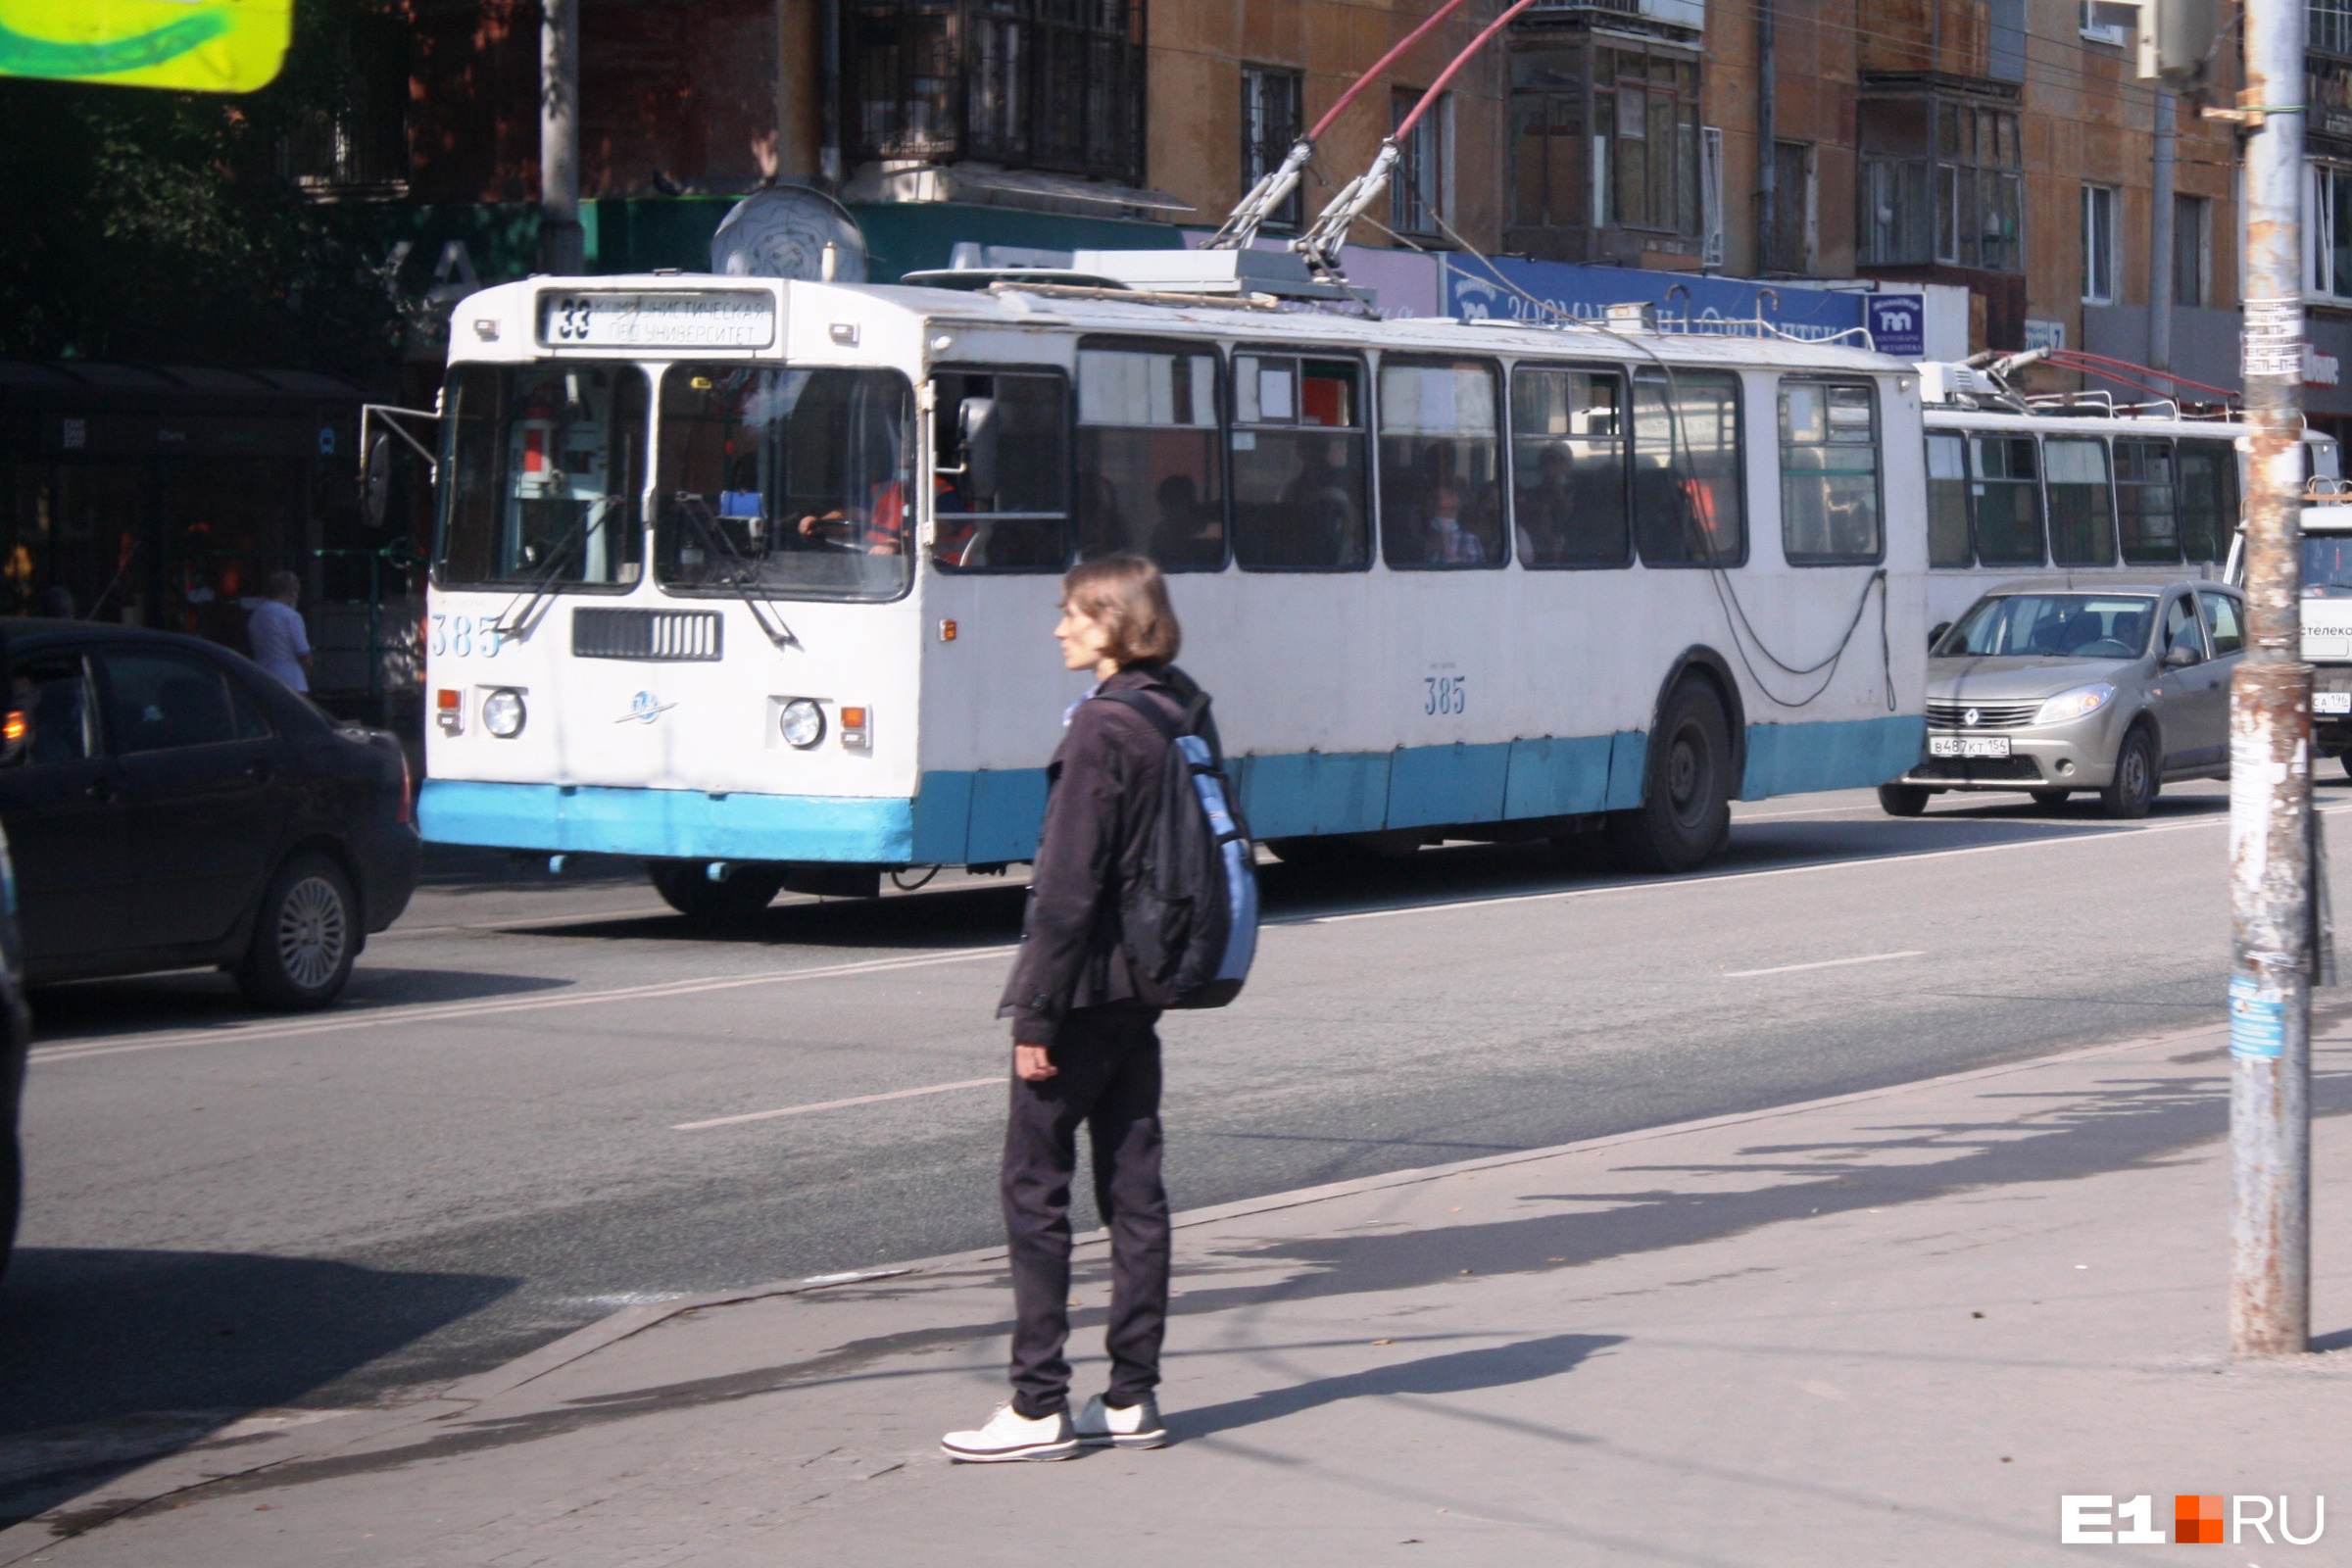 Длинные троллейбусы